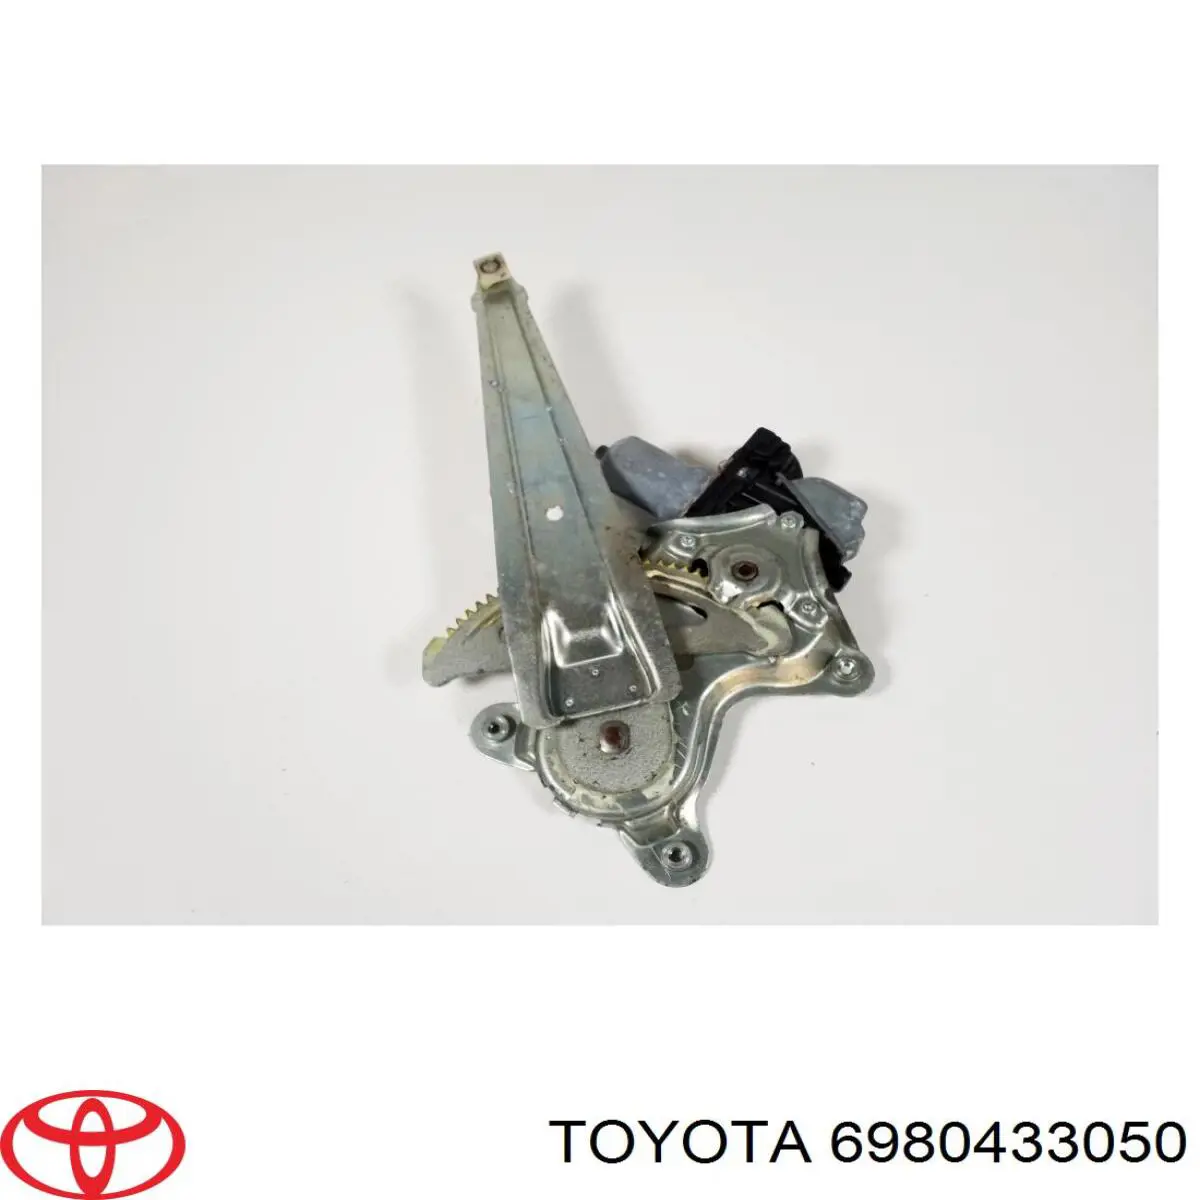 Mecanismo de acionamento de vidro da porta traseira esquerda para Toyota Camry (V50)